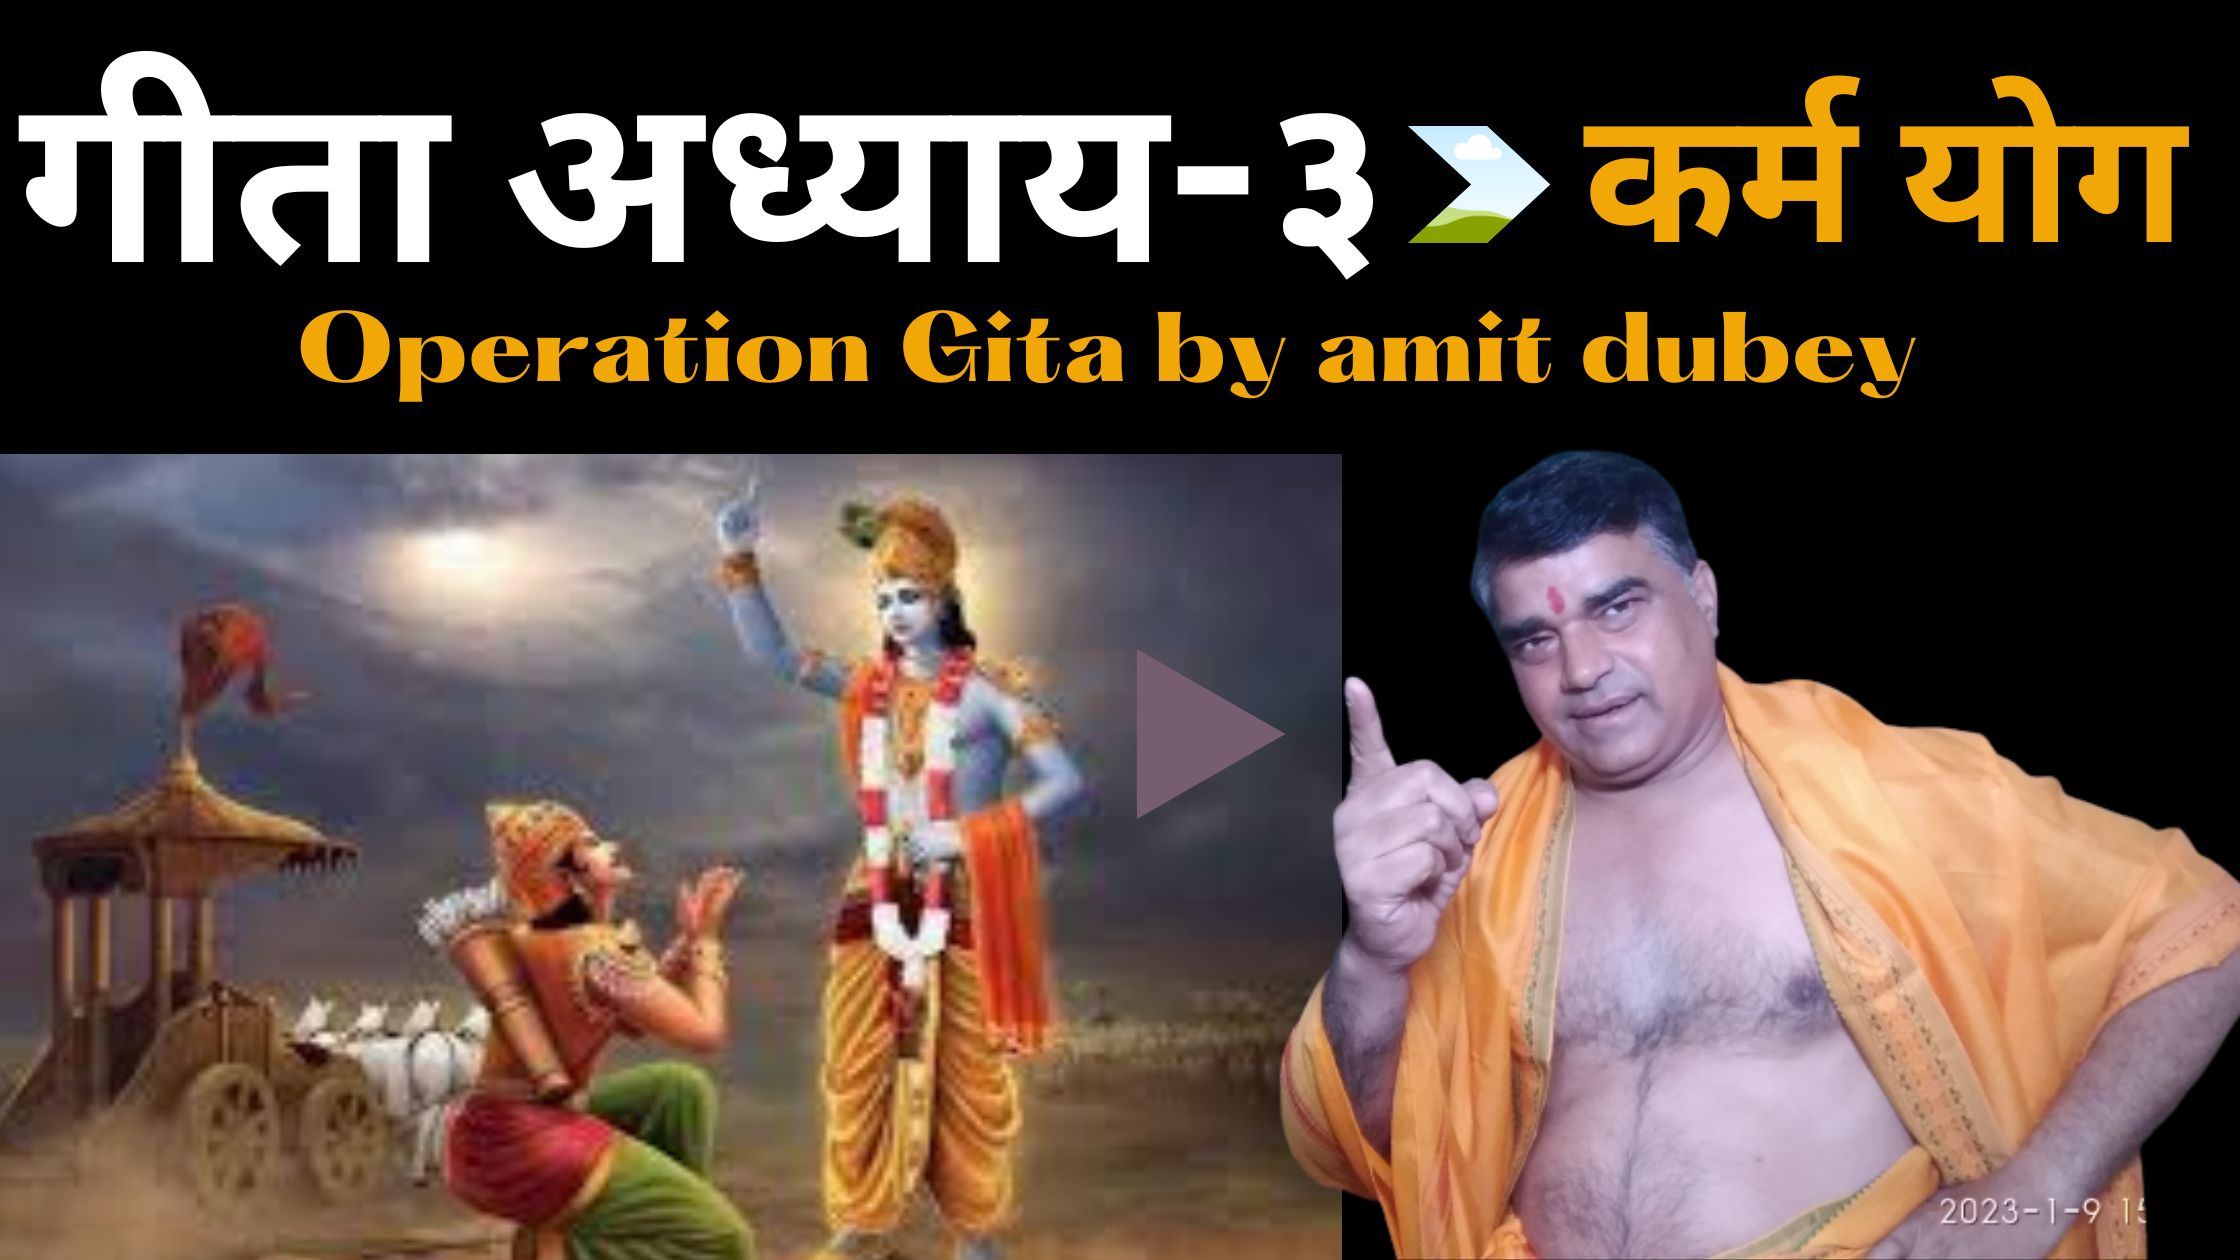 गीता अध्याय-३ कर्म योग || Operation Gita